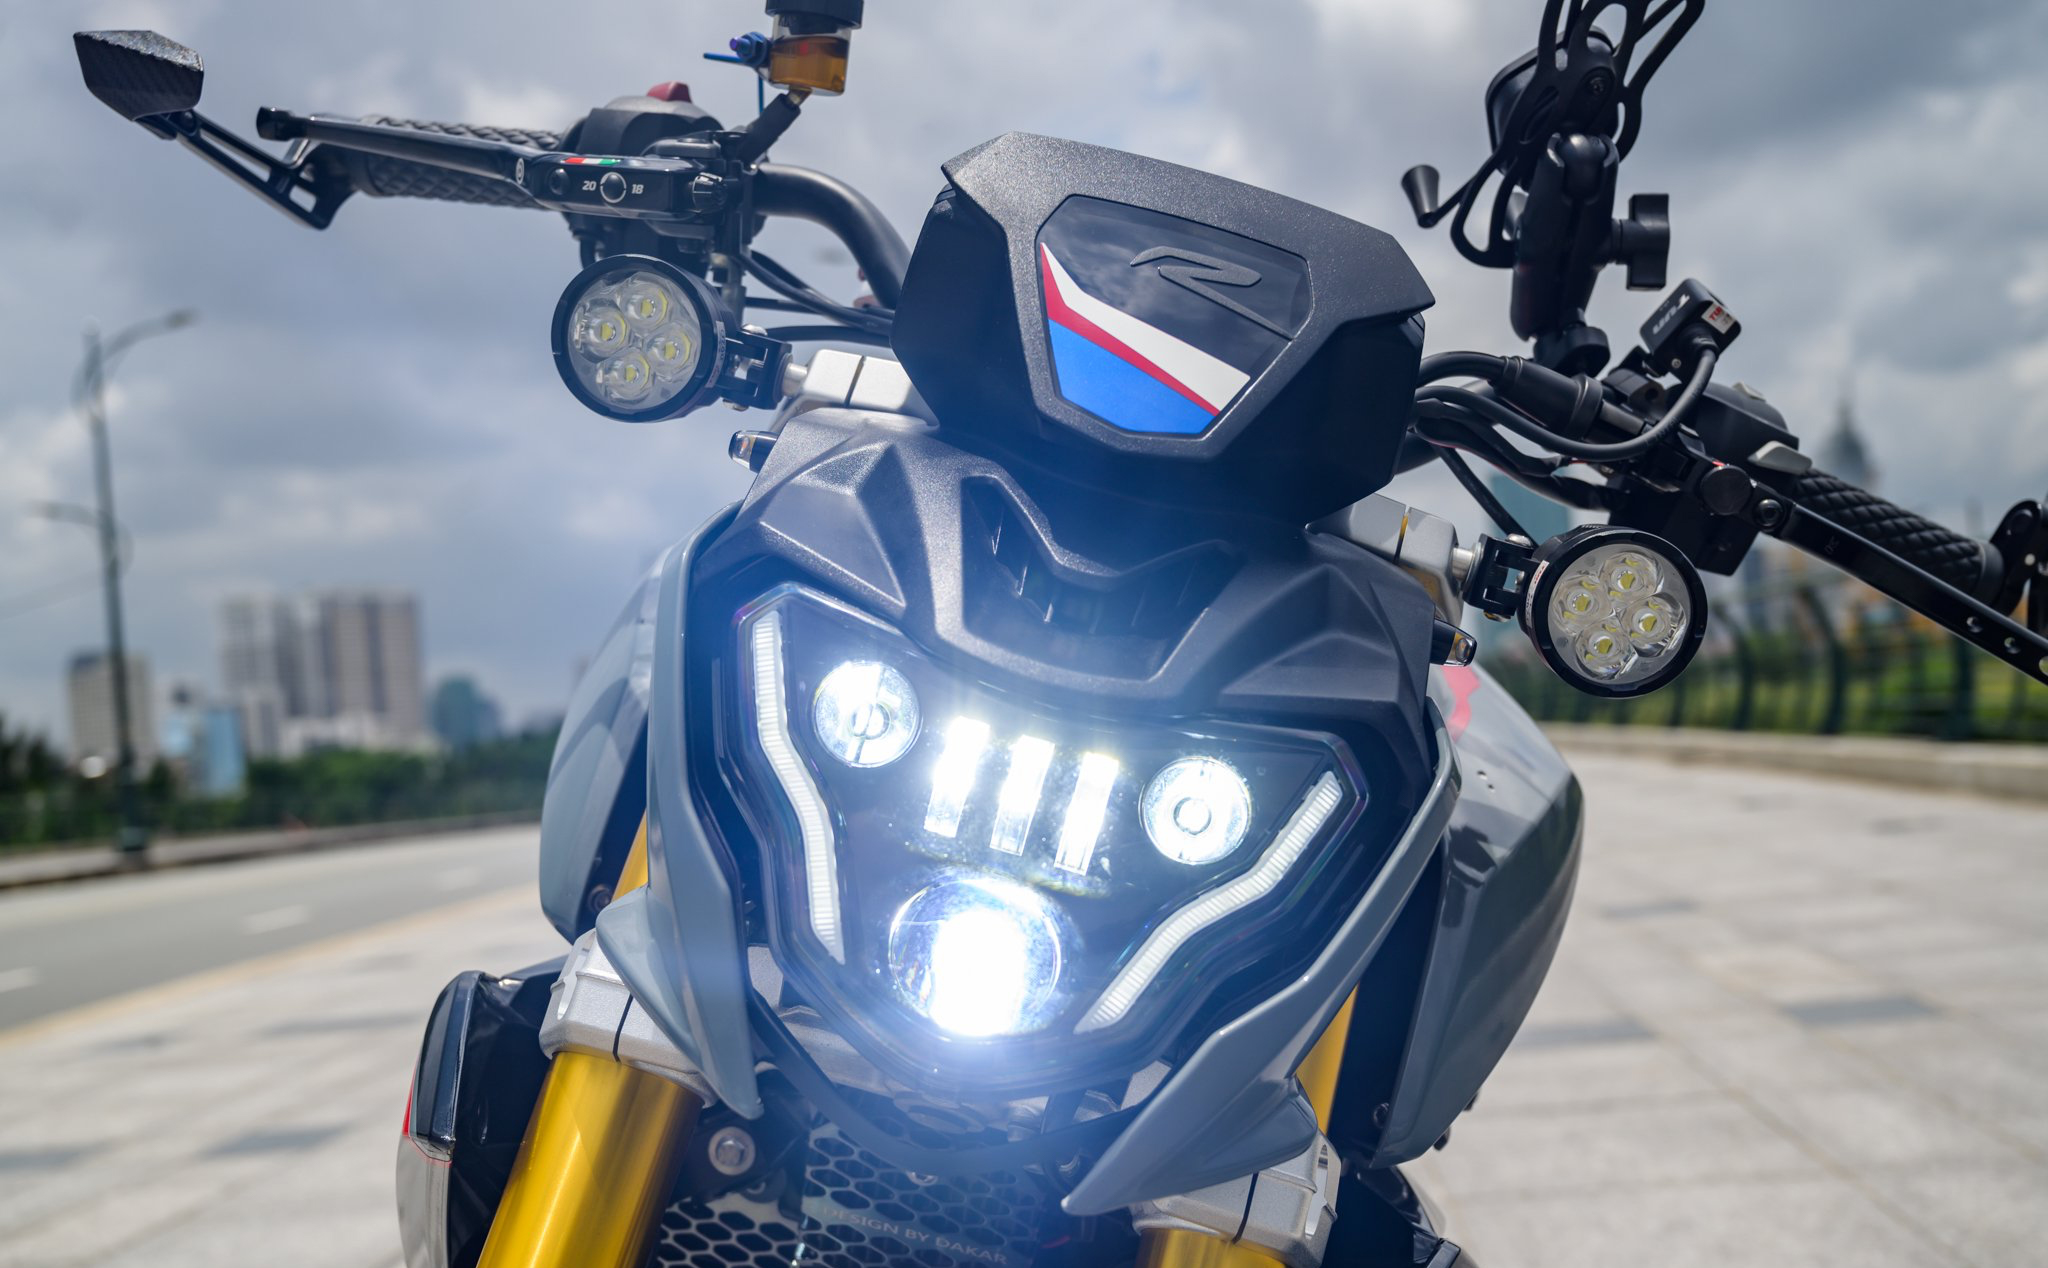 Anh em nghĩ sao về việc gắn đèn trợ sáng cho xe máy?